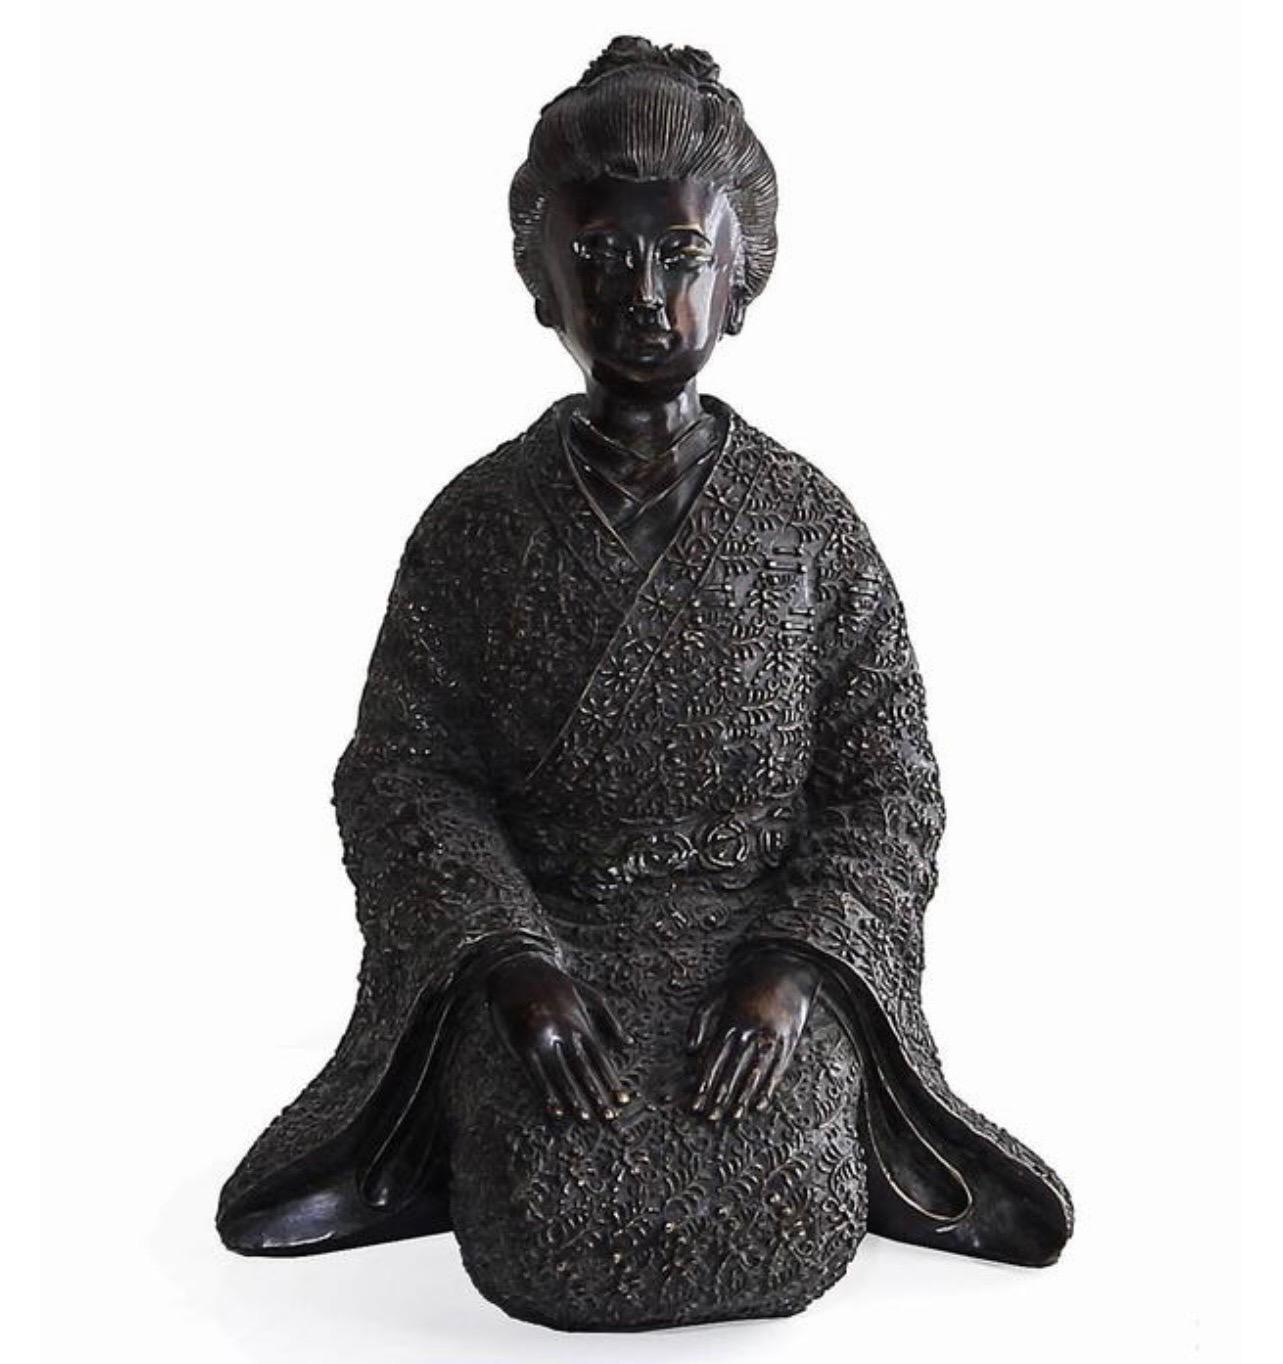 Ein schönes Paar japanisch inspirierter Bronzestatuen der Firma Maitland-Smith. Enthält eine Geisha-Figur und einen Samurai, beide in kniender Position. Die Details an den Figuren, Gewändern, Gesichtern und Haaren sind in Hochrelief und mit hoher